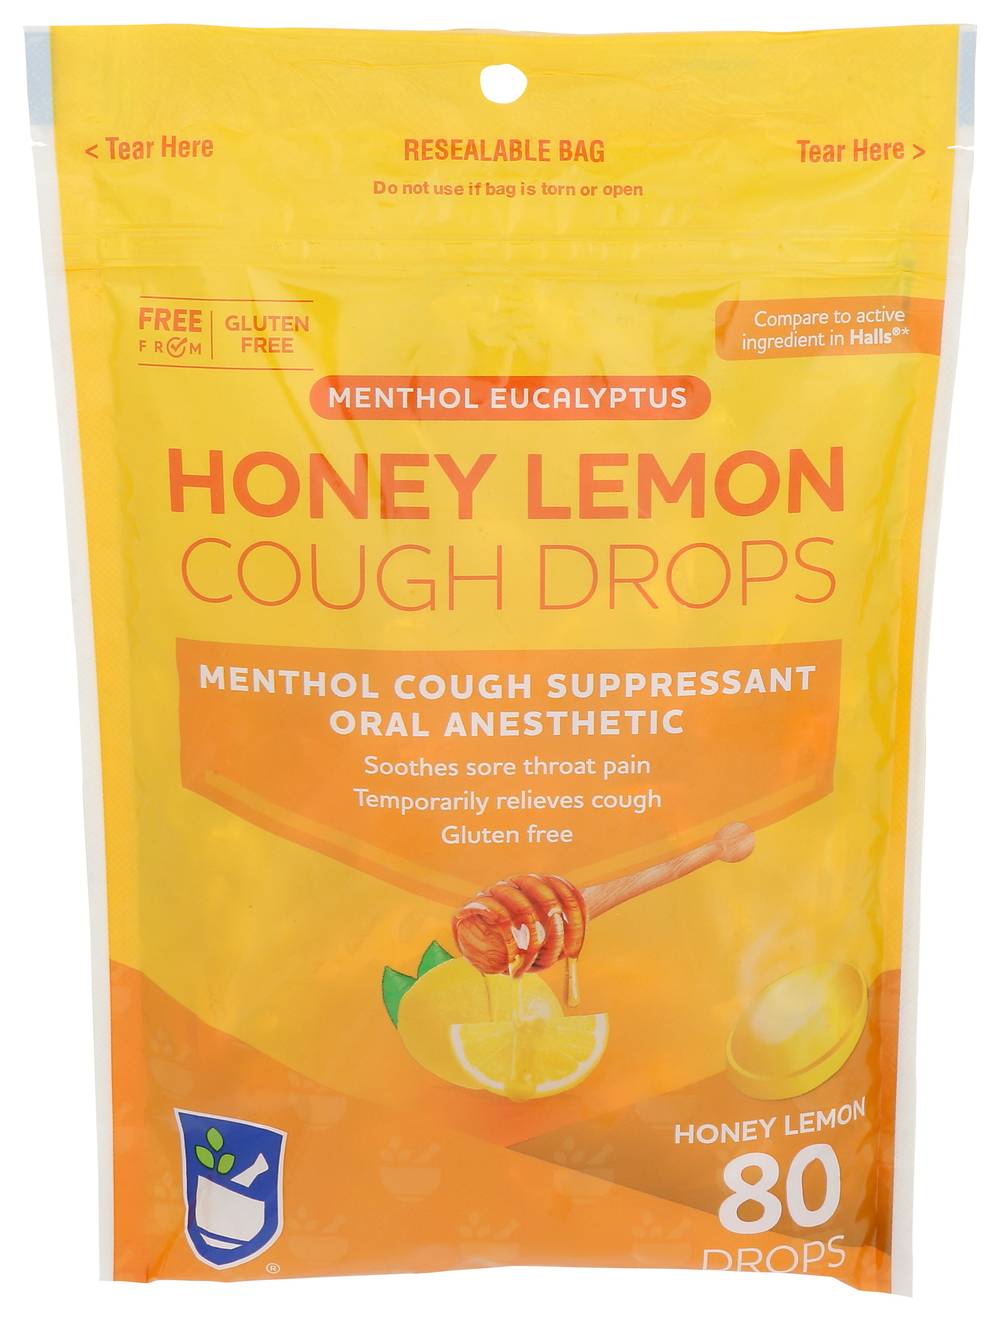 Rite Aid Cough Drops Cough Relief Honey Lemon (80 ct)